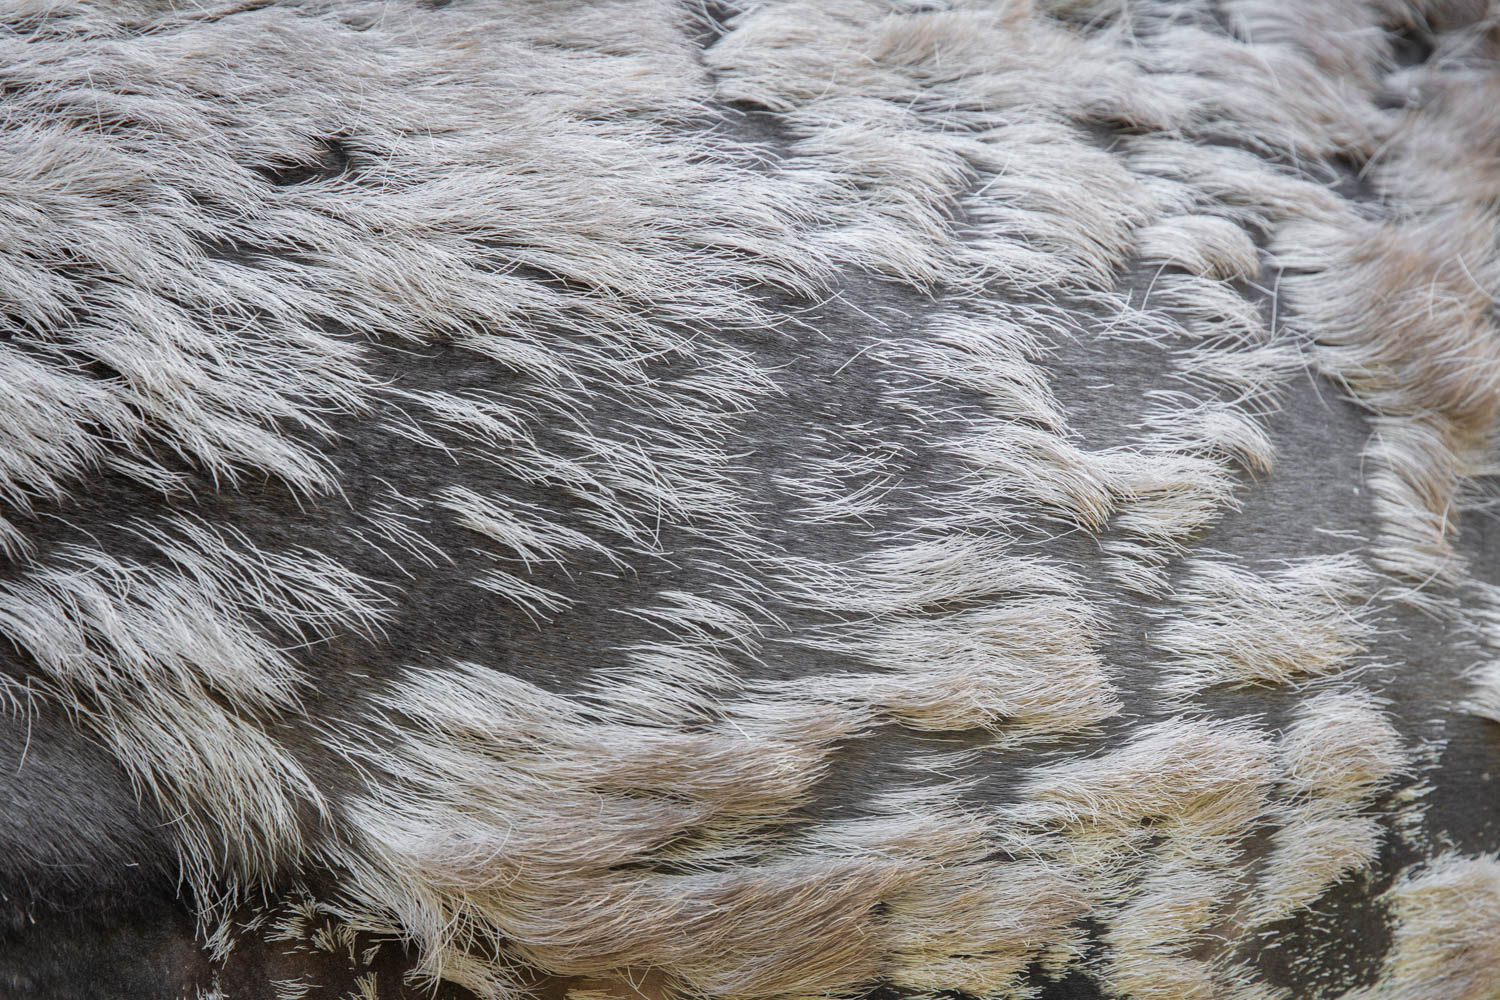 The fur of a Reindeer in Dalarna